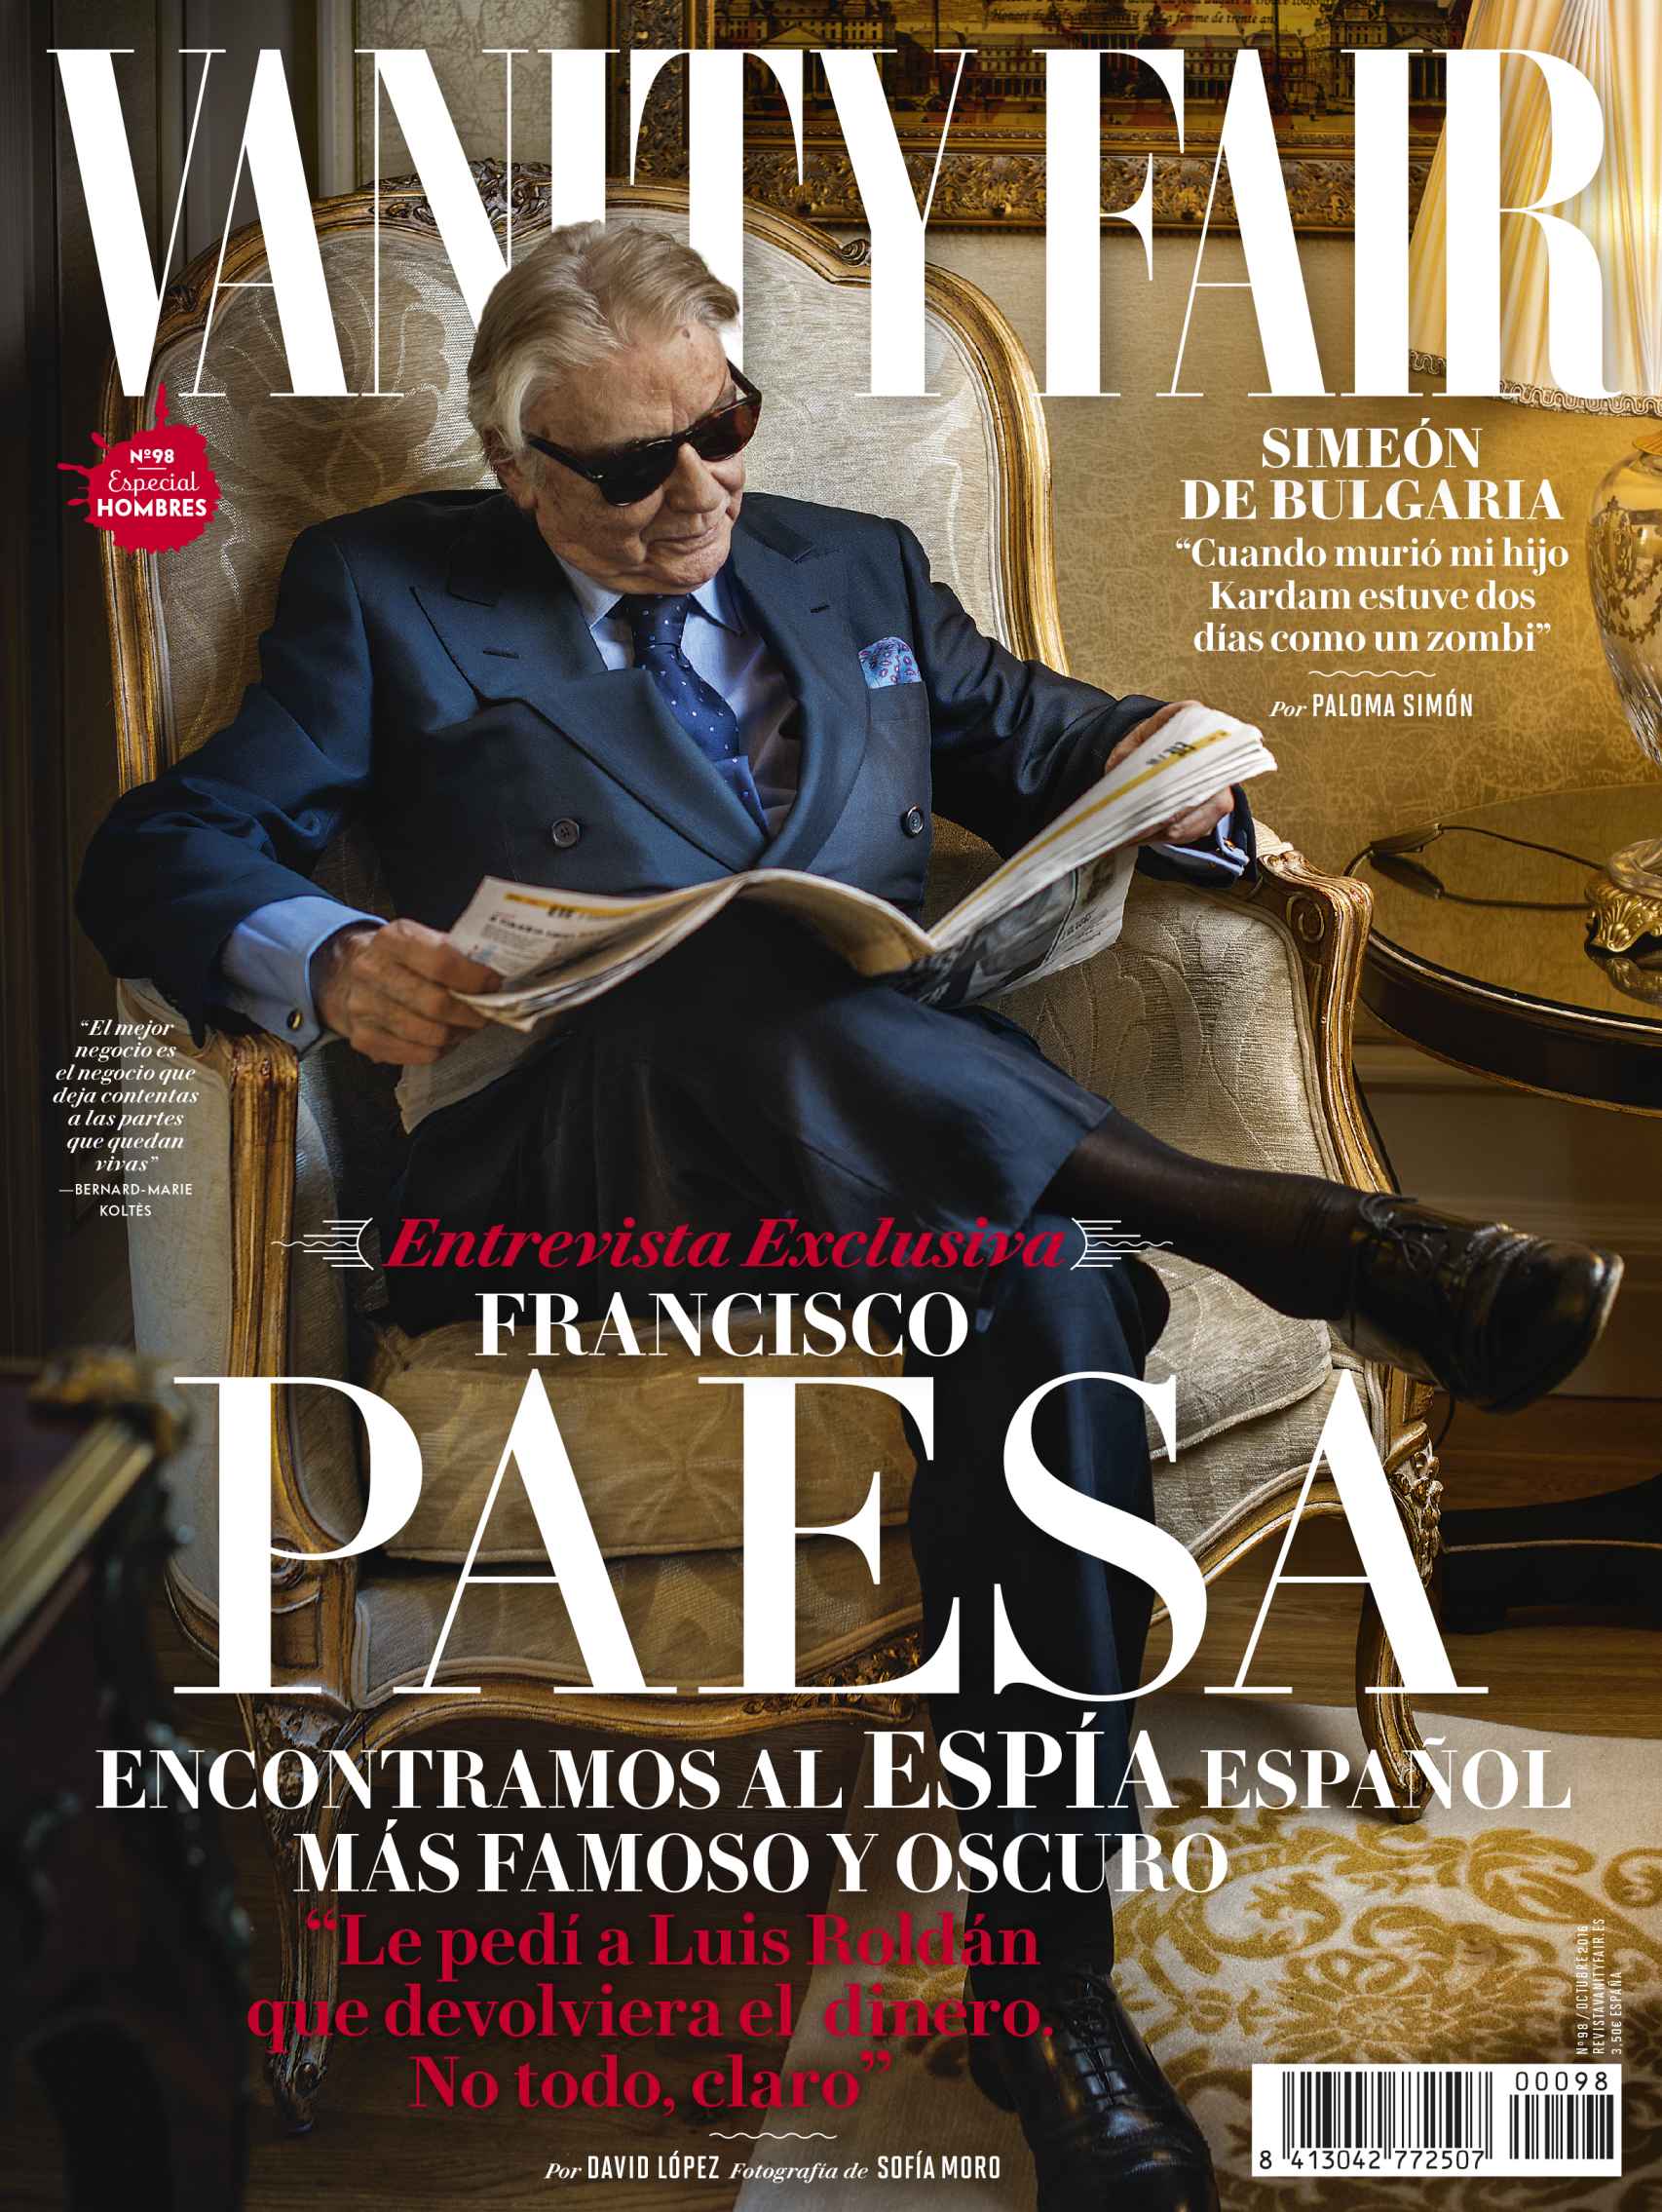 El último número de Vanity Fair con la entrevista a Francisco Paesa.